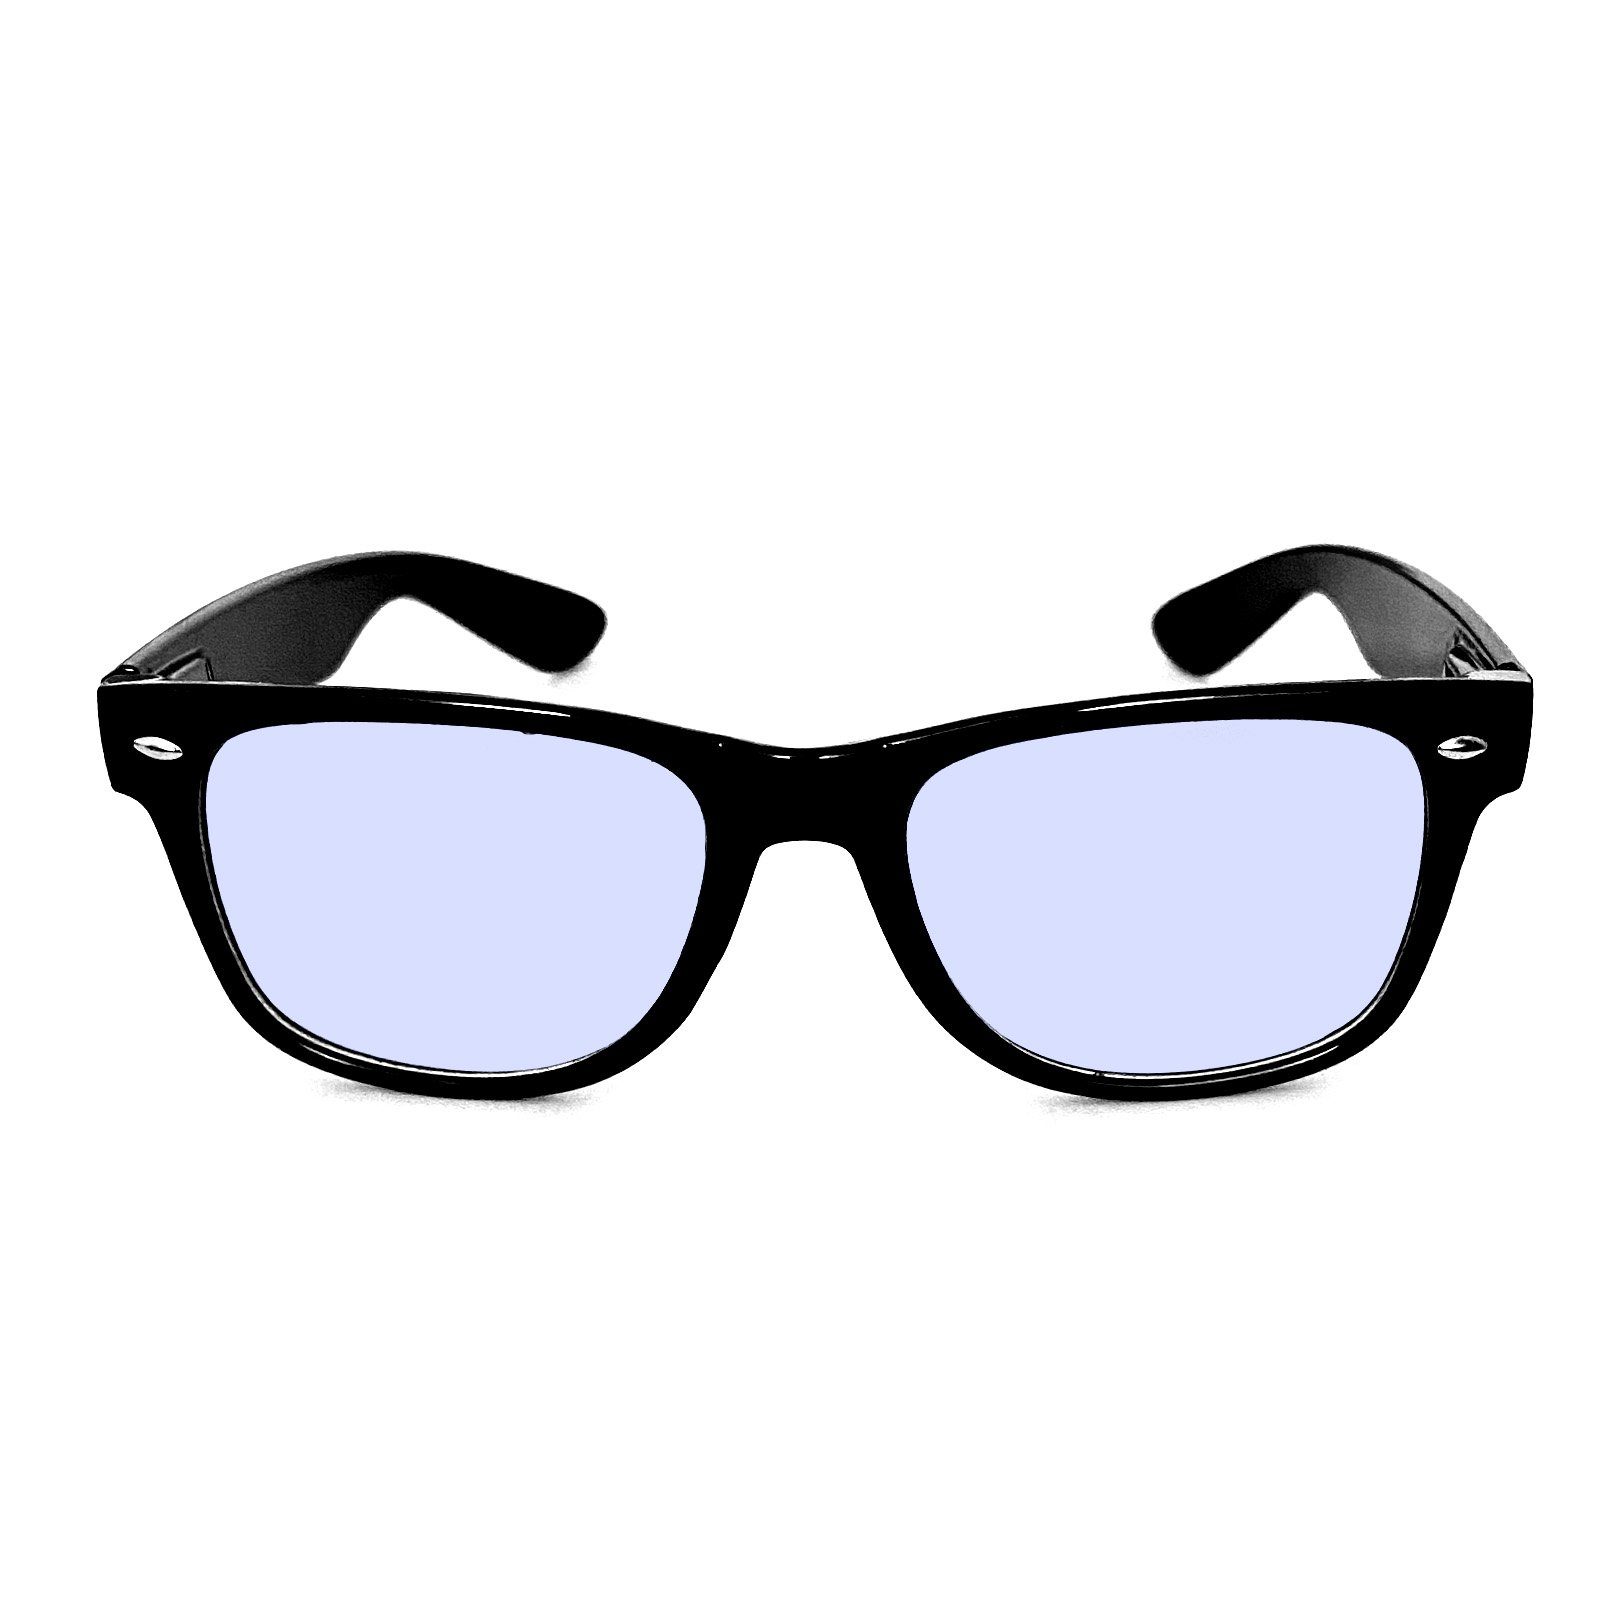 HAC24 Brille Herren Blaulichtfilter Blaufilterbrille Bürobrille Bildschirmbrille Bildschirm Damen 4x Monitor Ohne PC Arbeitsplatzbrille, Blaufilter für Brille Gamingbrille Stärke